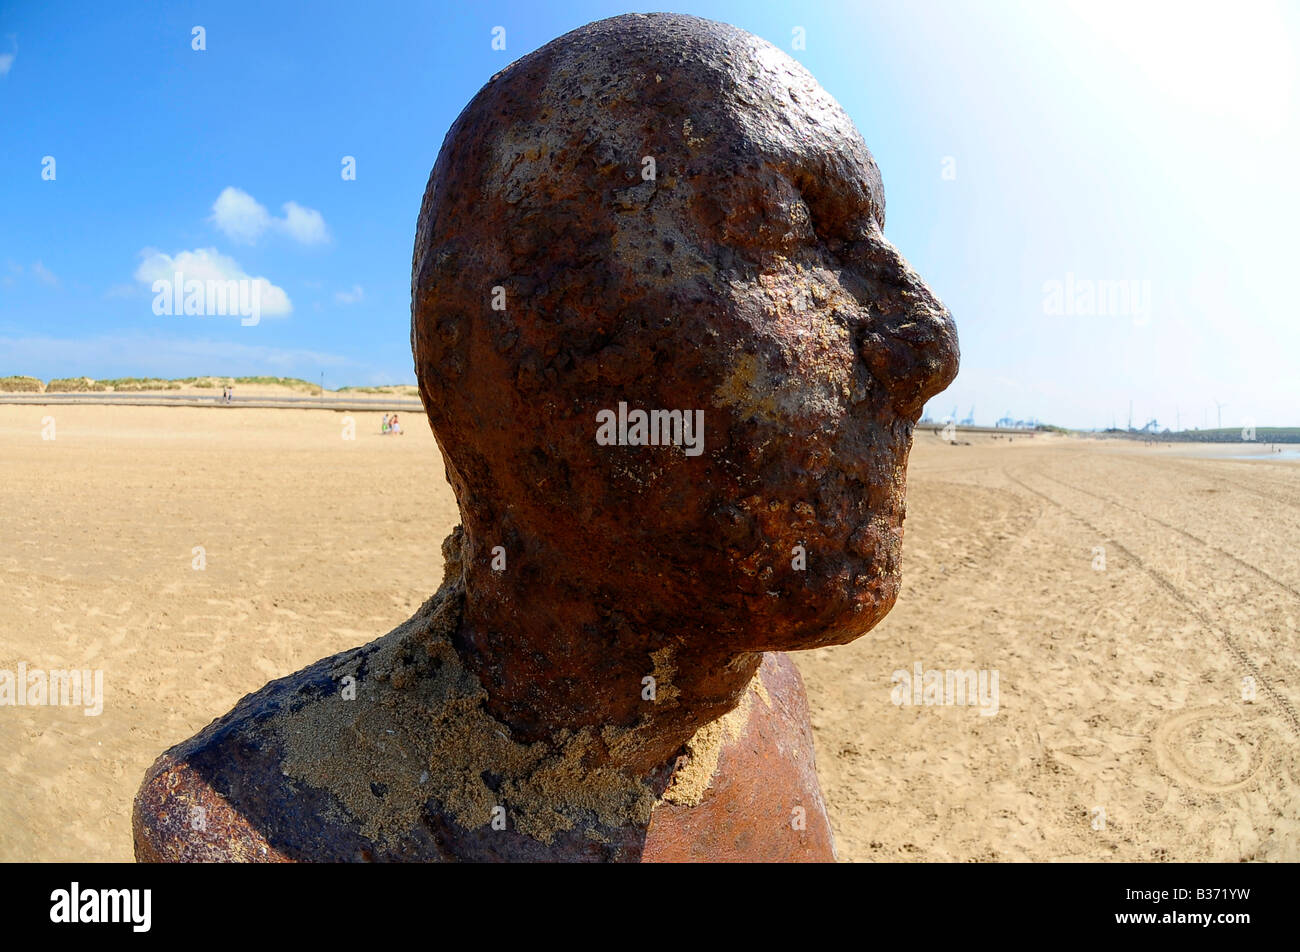 Profil Gesicht Kopf ein weiterer Ort Eisen Mann Anthony Gormley Crosby Strand Liverpool Reisen Tourismus Kunst Skulptur Sommer am Meer Stockfoto